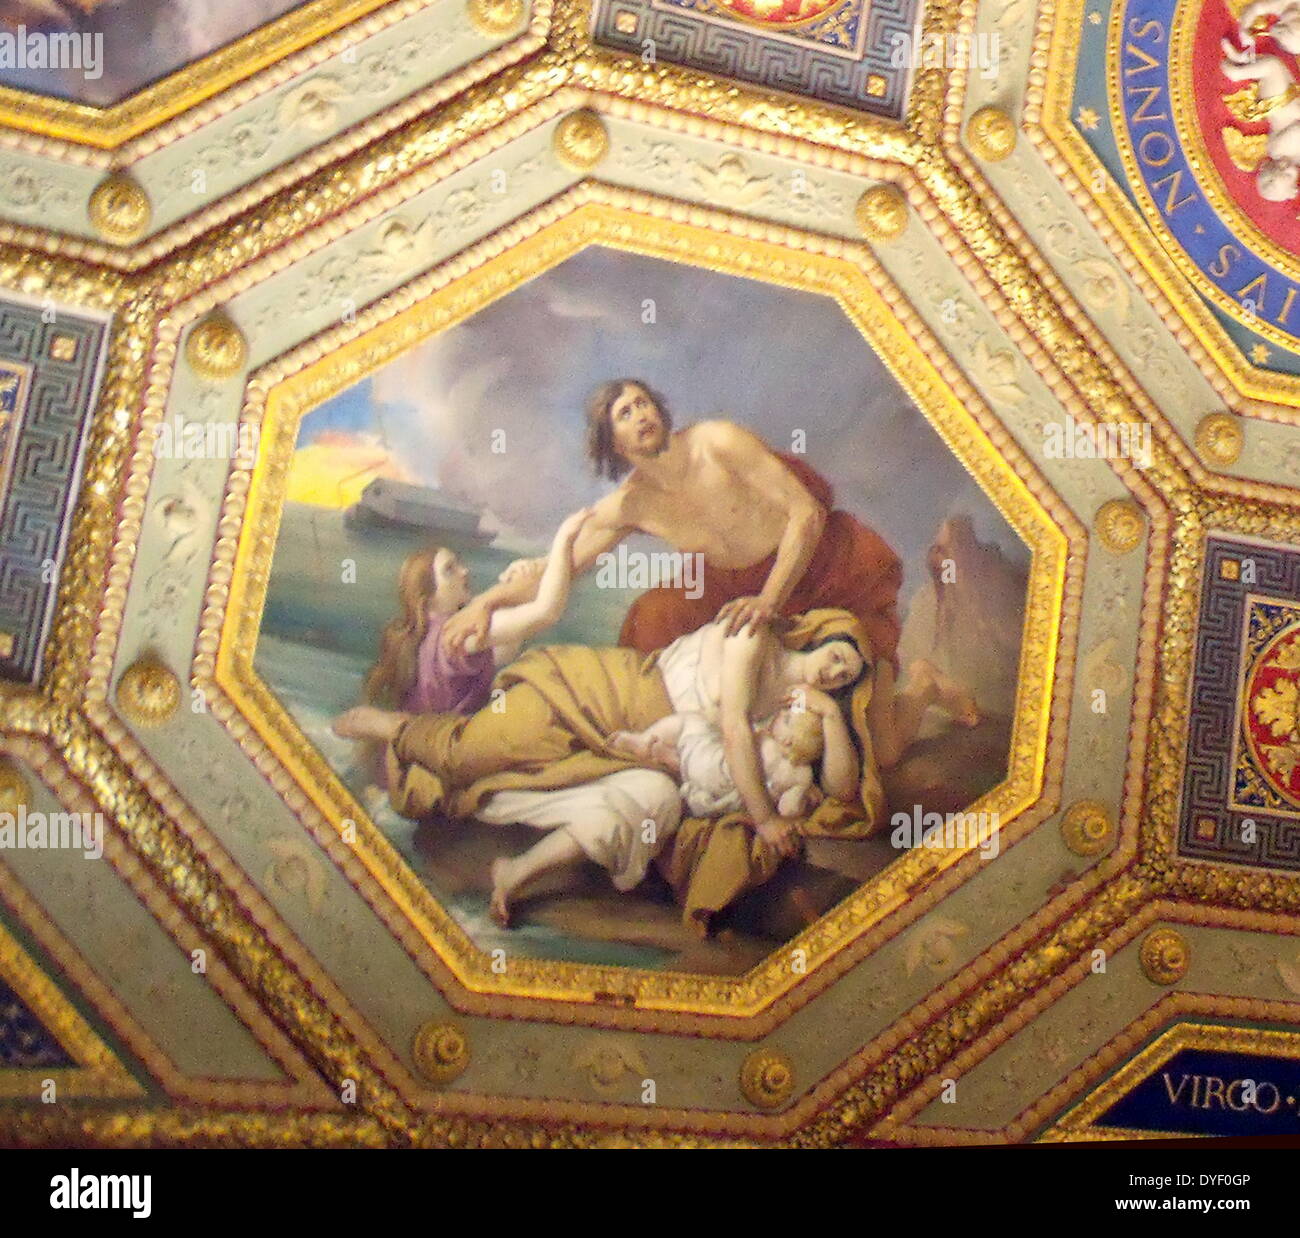 Dettaglio dai Musei Vaticani, una immensa collezione di classici, capolavori rinascimentali ecc. Fondata all'inizio del XVI secolo da papa Giulio II sono considerati alcuni dei più grandi musei del mondo. Questa immagine mostra una porzione delle meravigliosamente il soffitto dipinto. Foto Stock